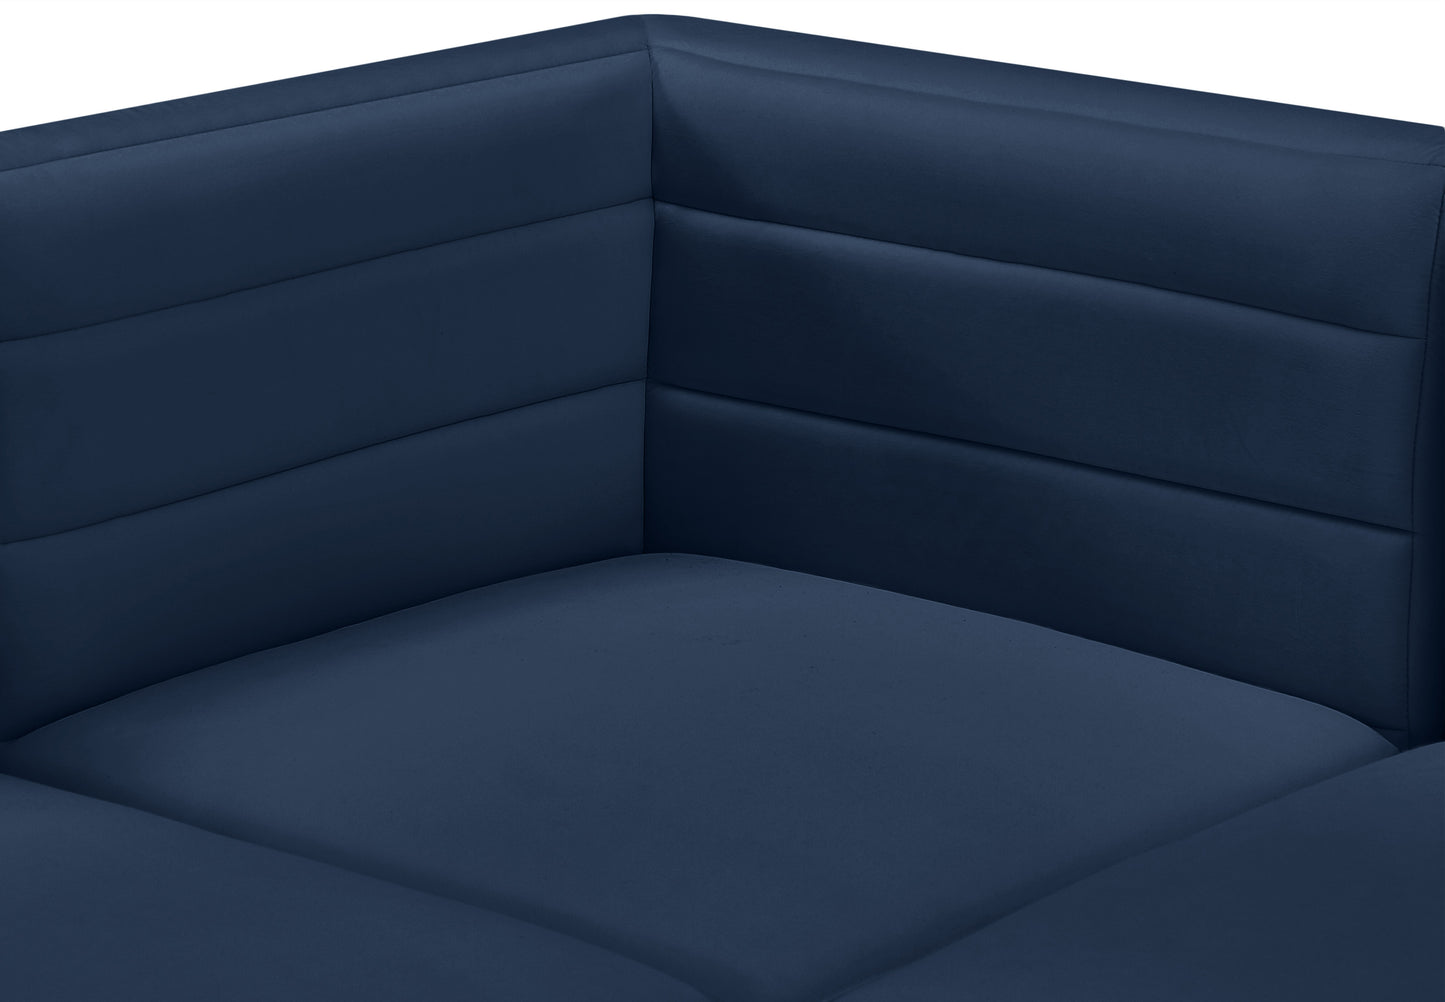 amelia navy velvet modular corner chair corner